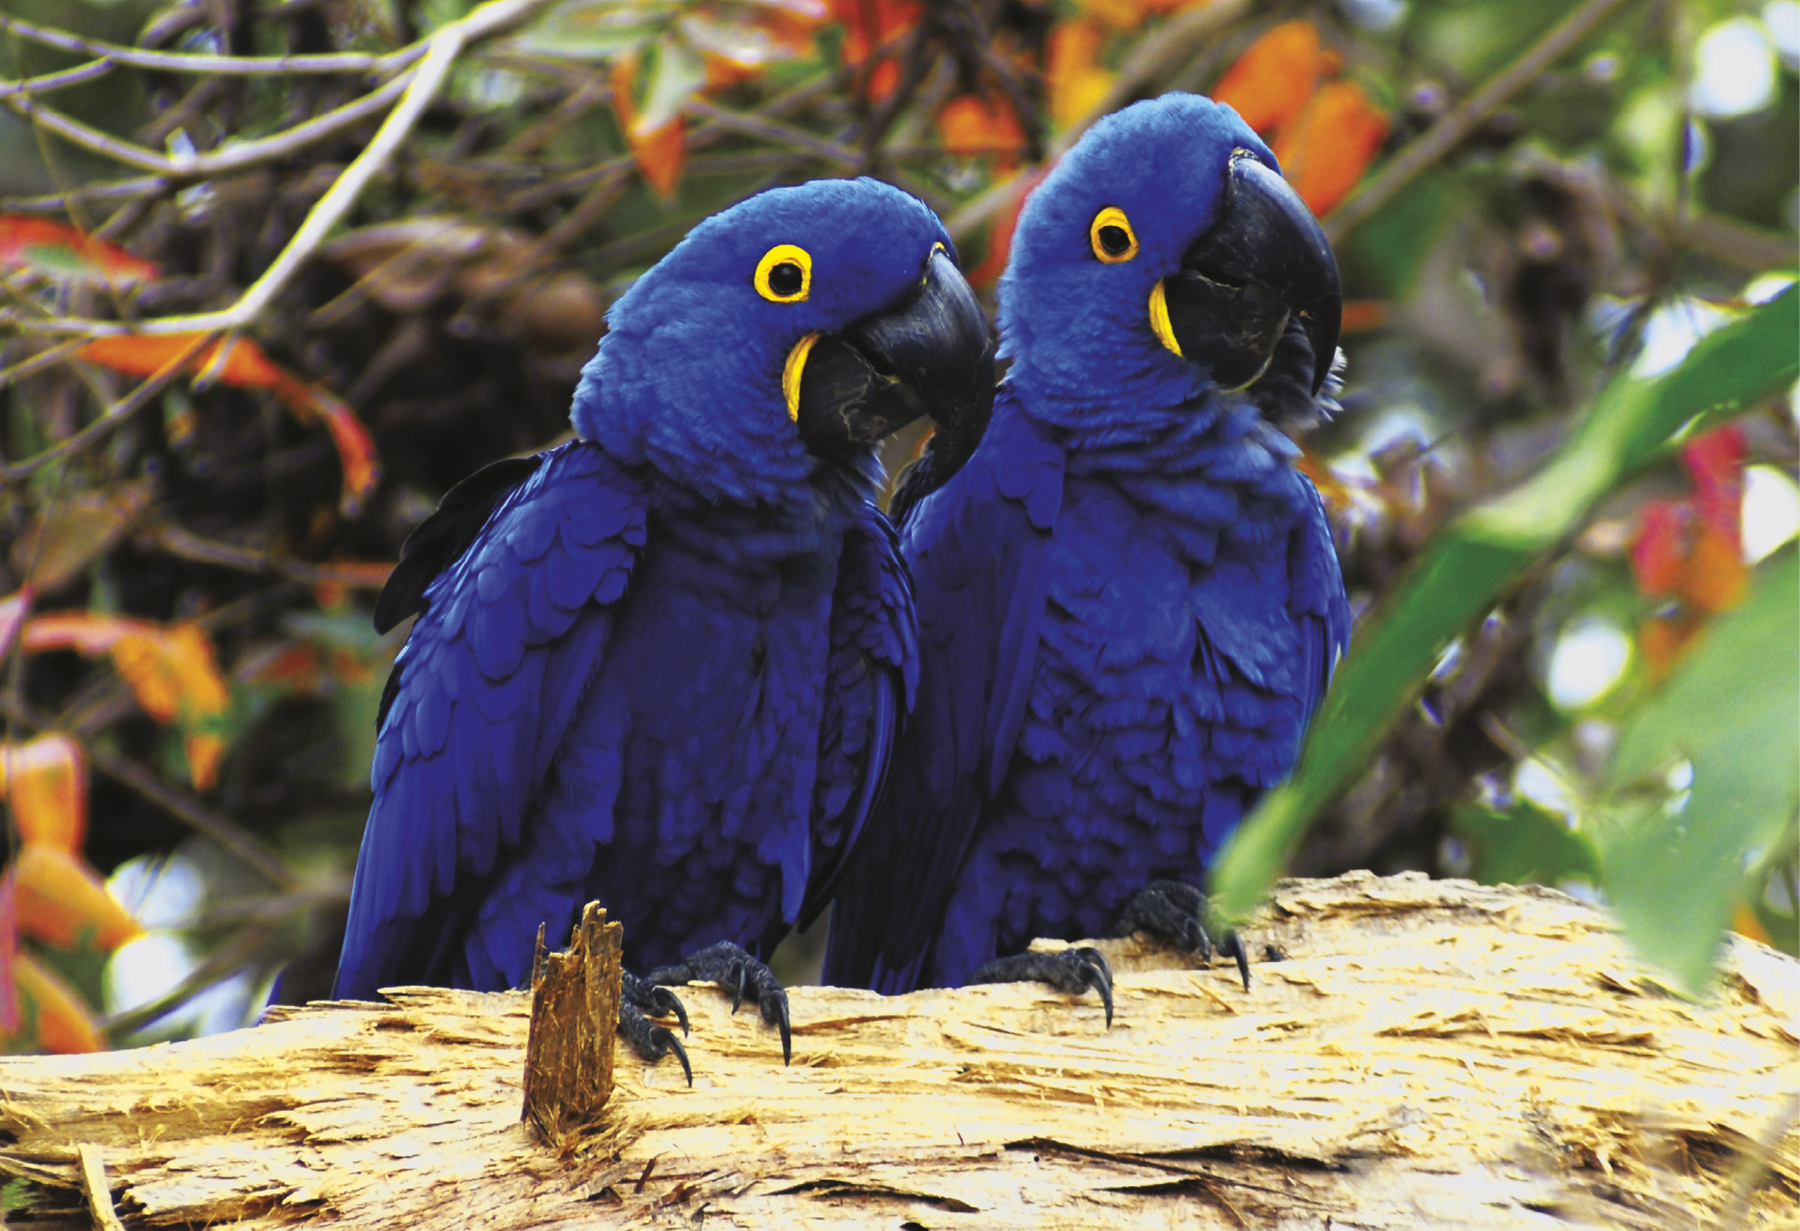 Fotografia: Duas araras-azuis pousadas sobre um galho de árvore em meio a floresta. Elas têm penas azuis, olhos amarelos e bicos pretos.